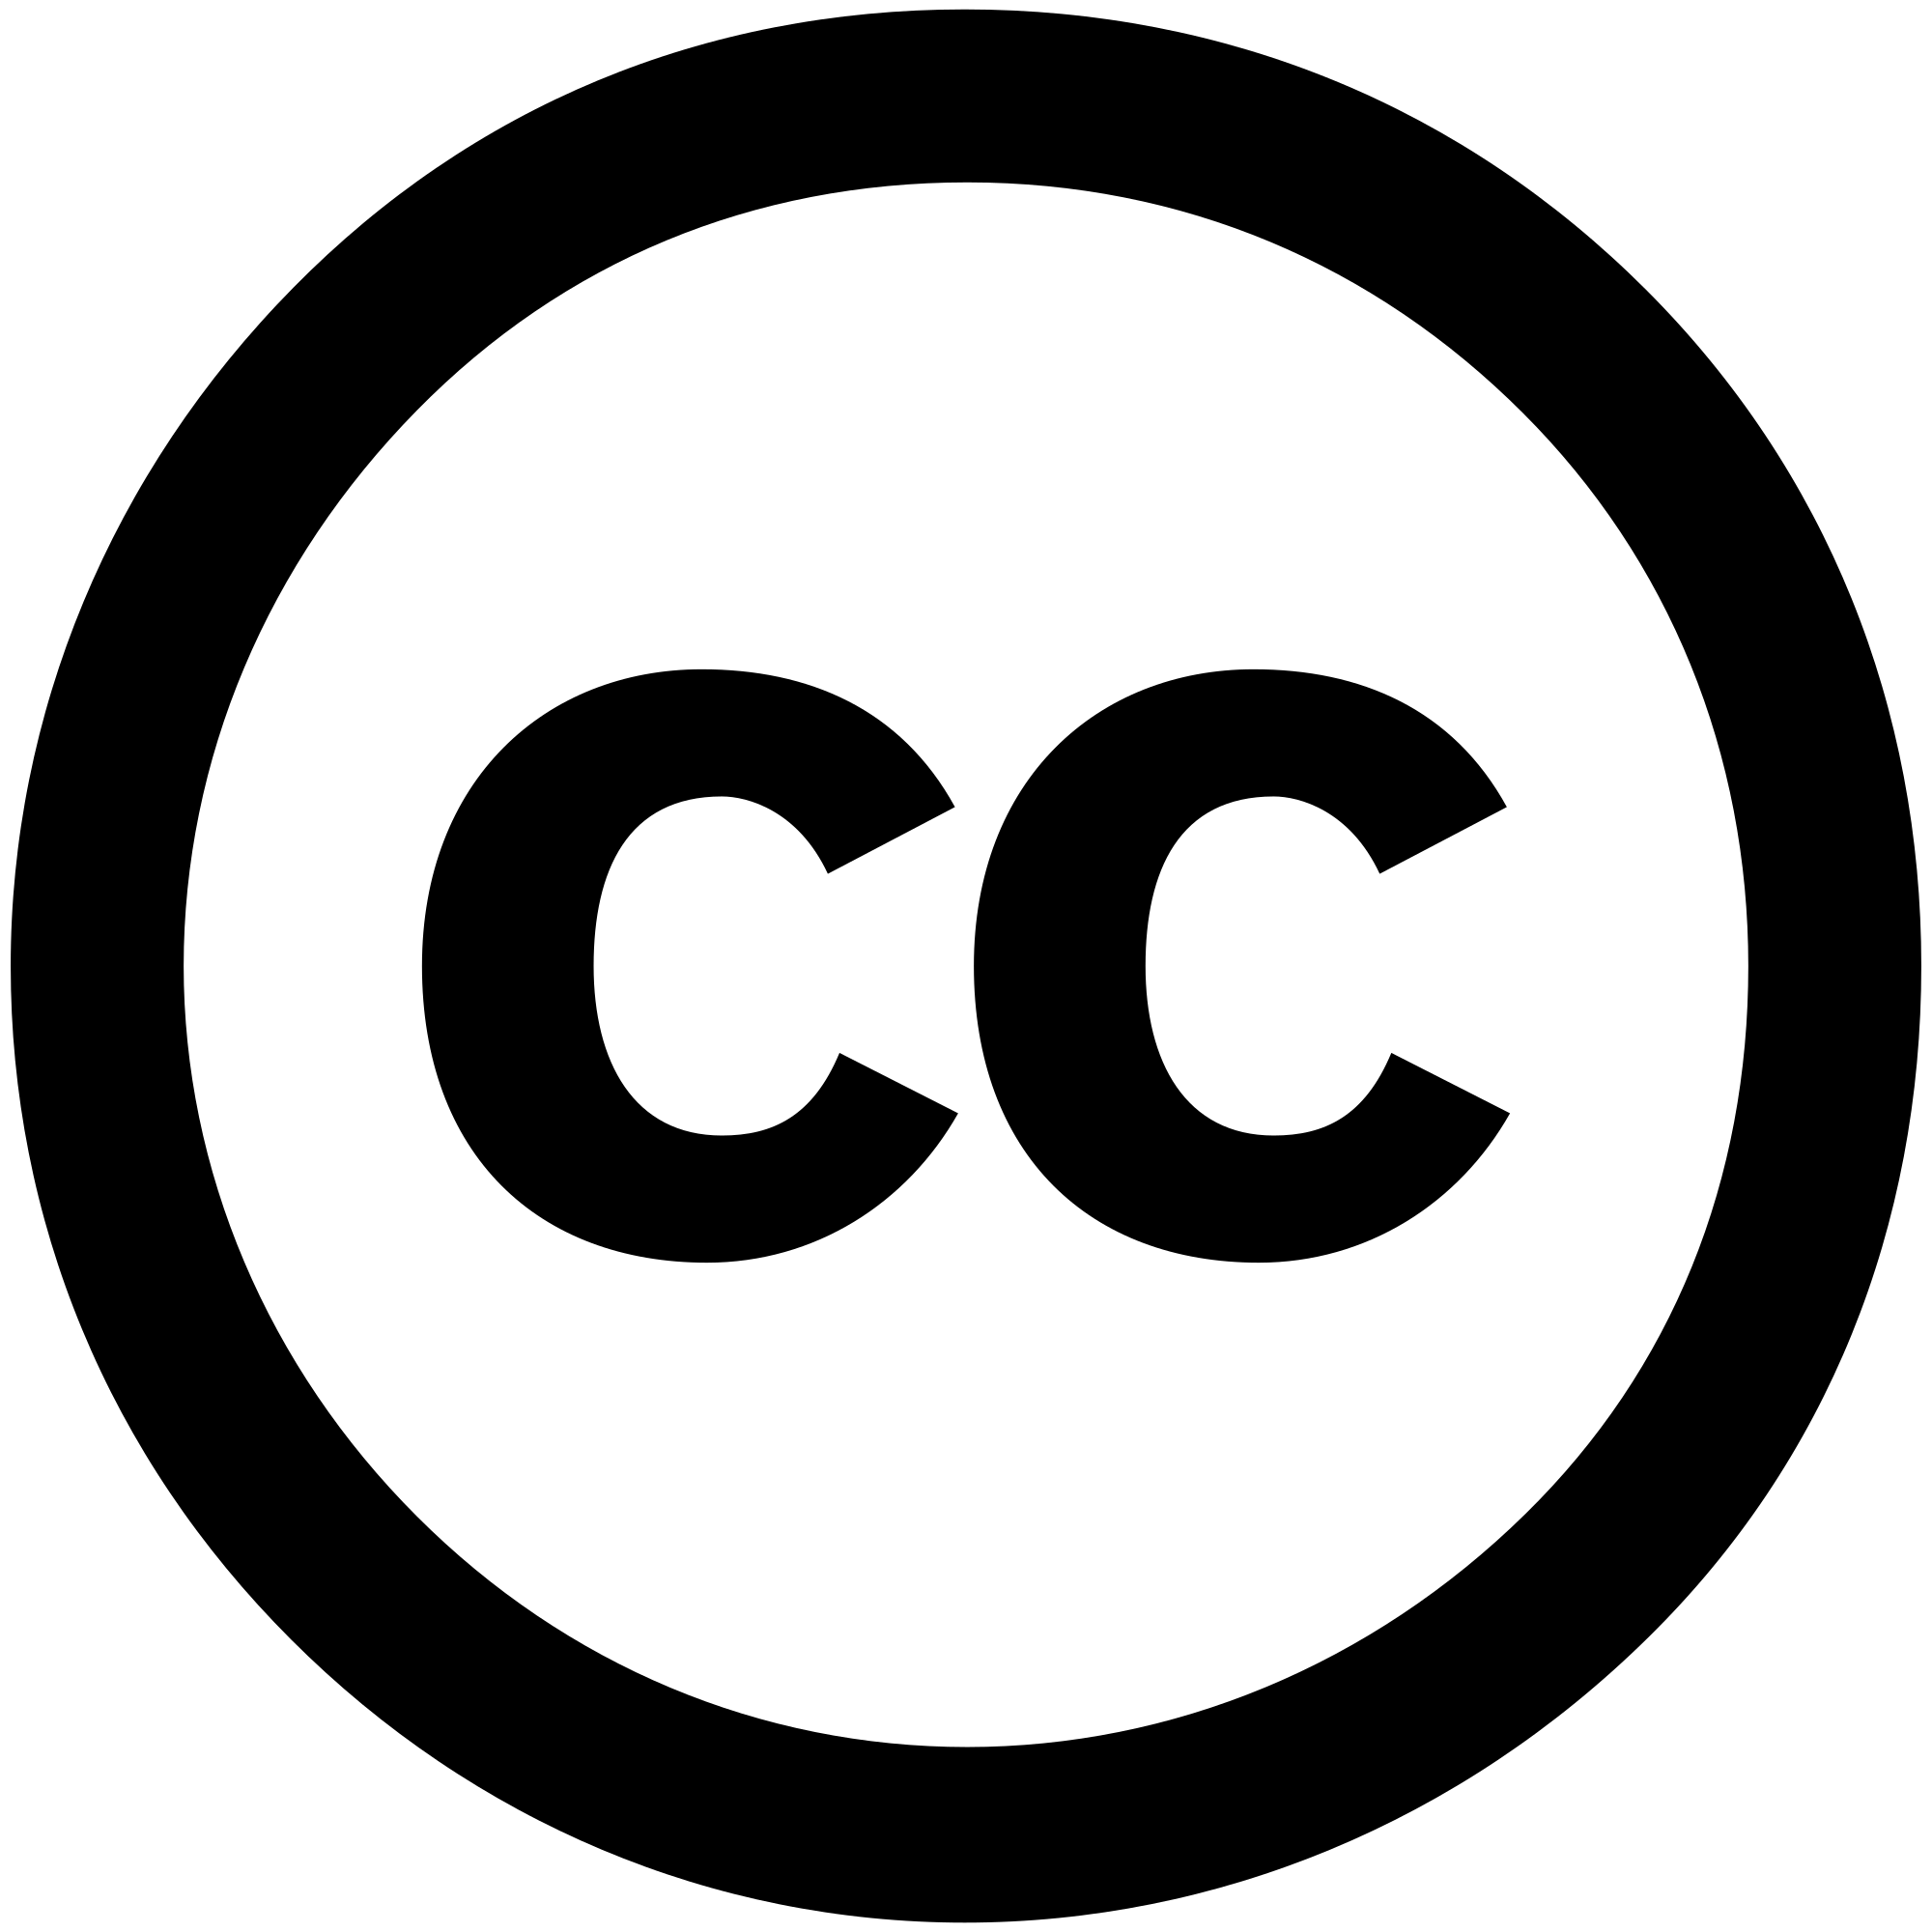 Creative commons license. Creative Commons знак. Знак копирайта. Логотип cc. Авторское право значок.